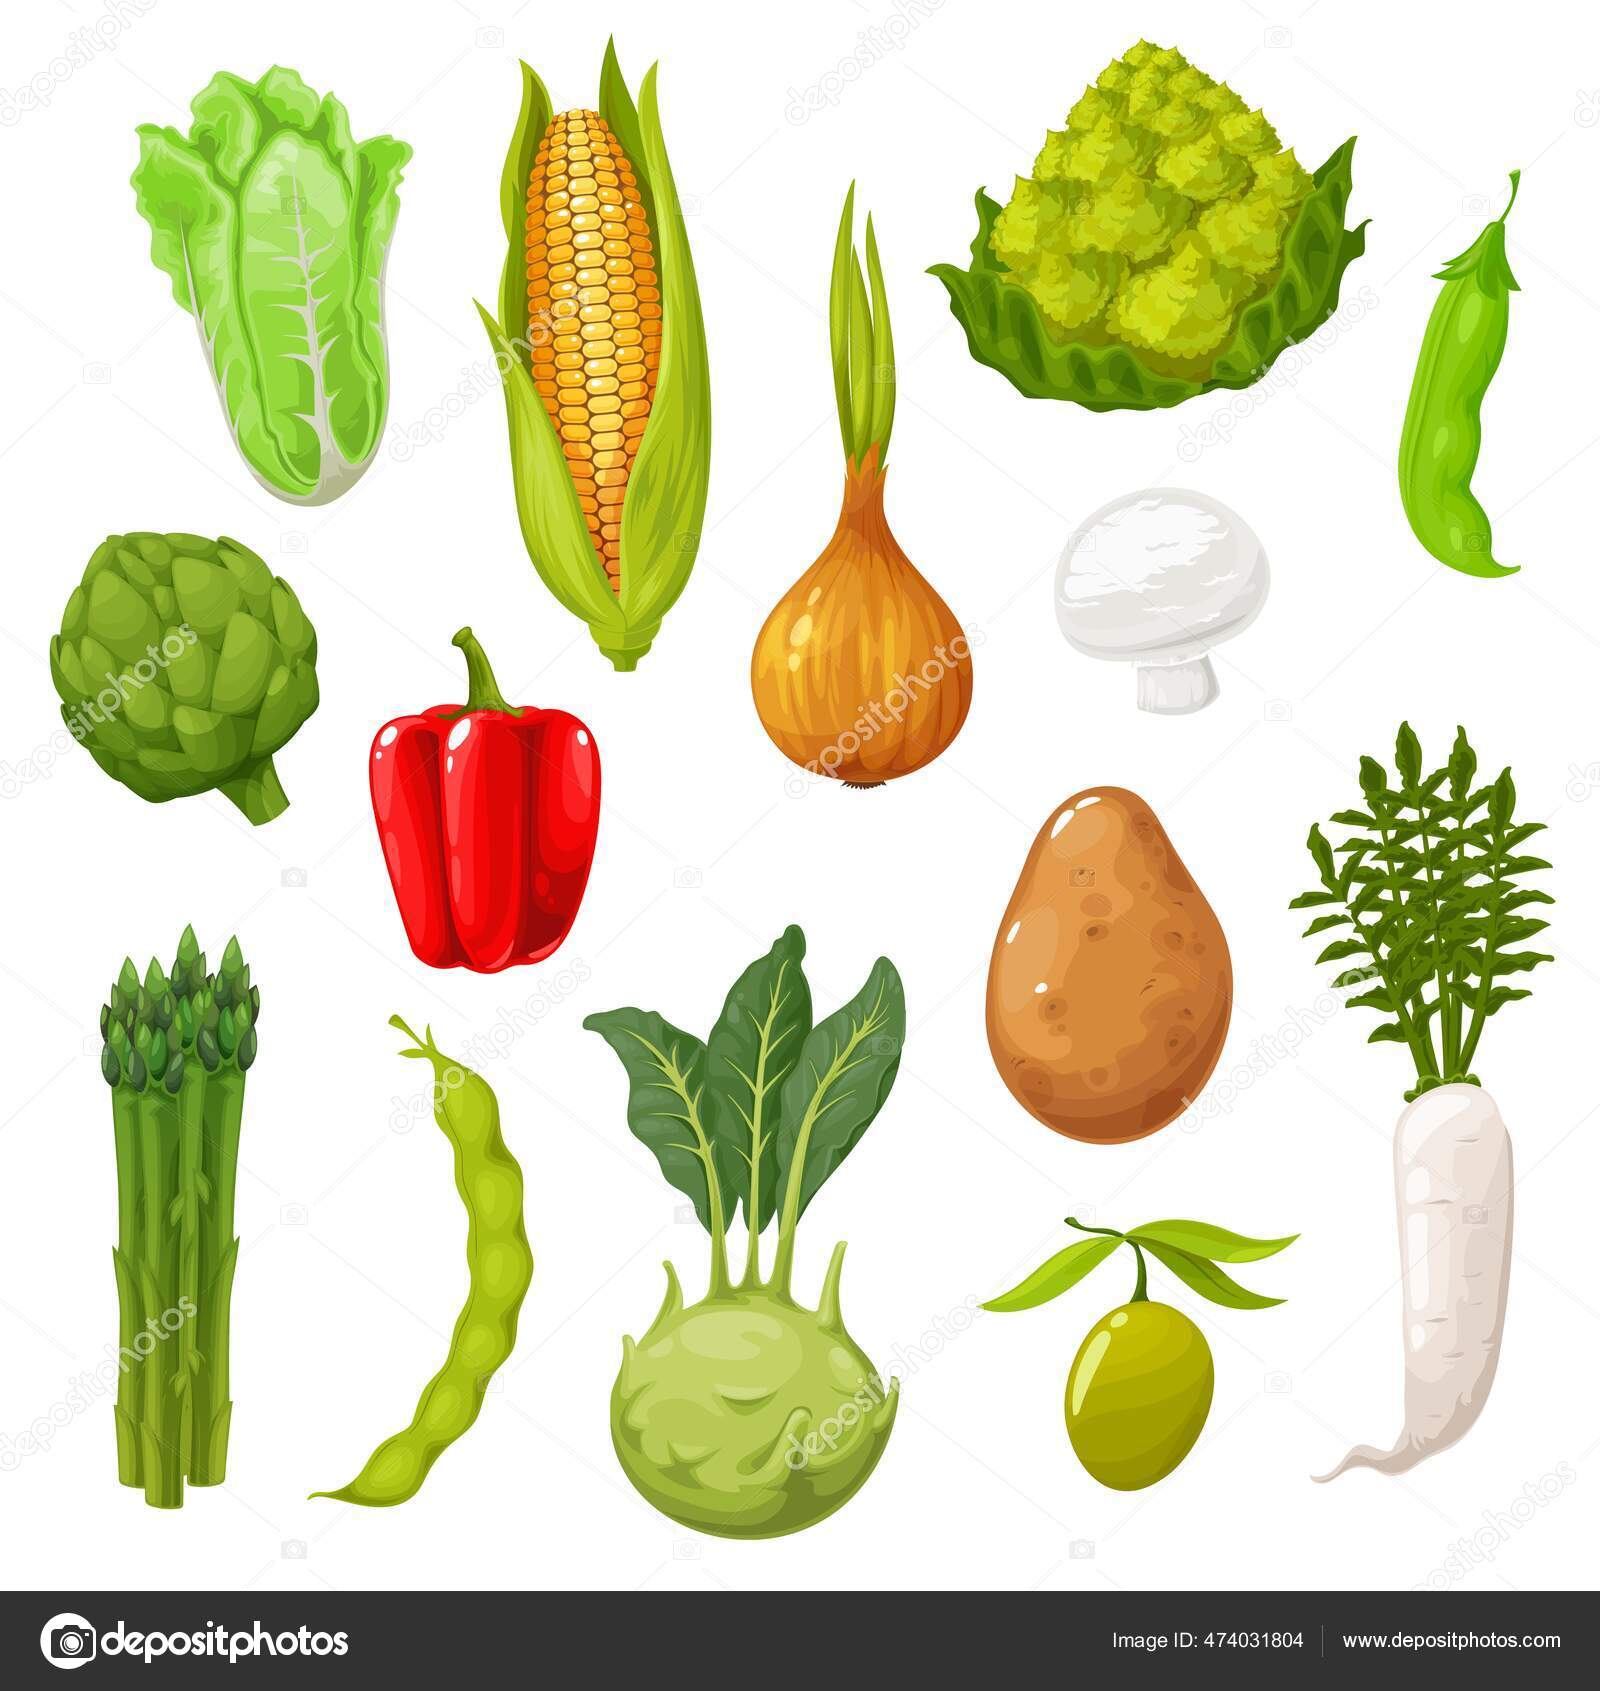 Clipart Vegetal Alguns Vegetais De Desenho Animado Como Brócolis E